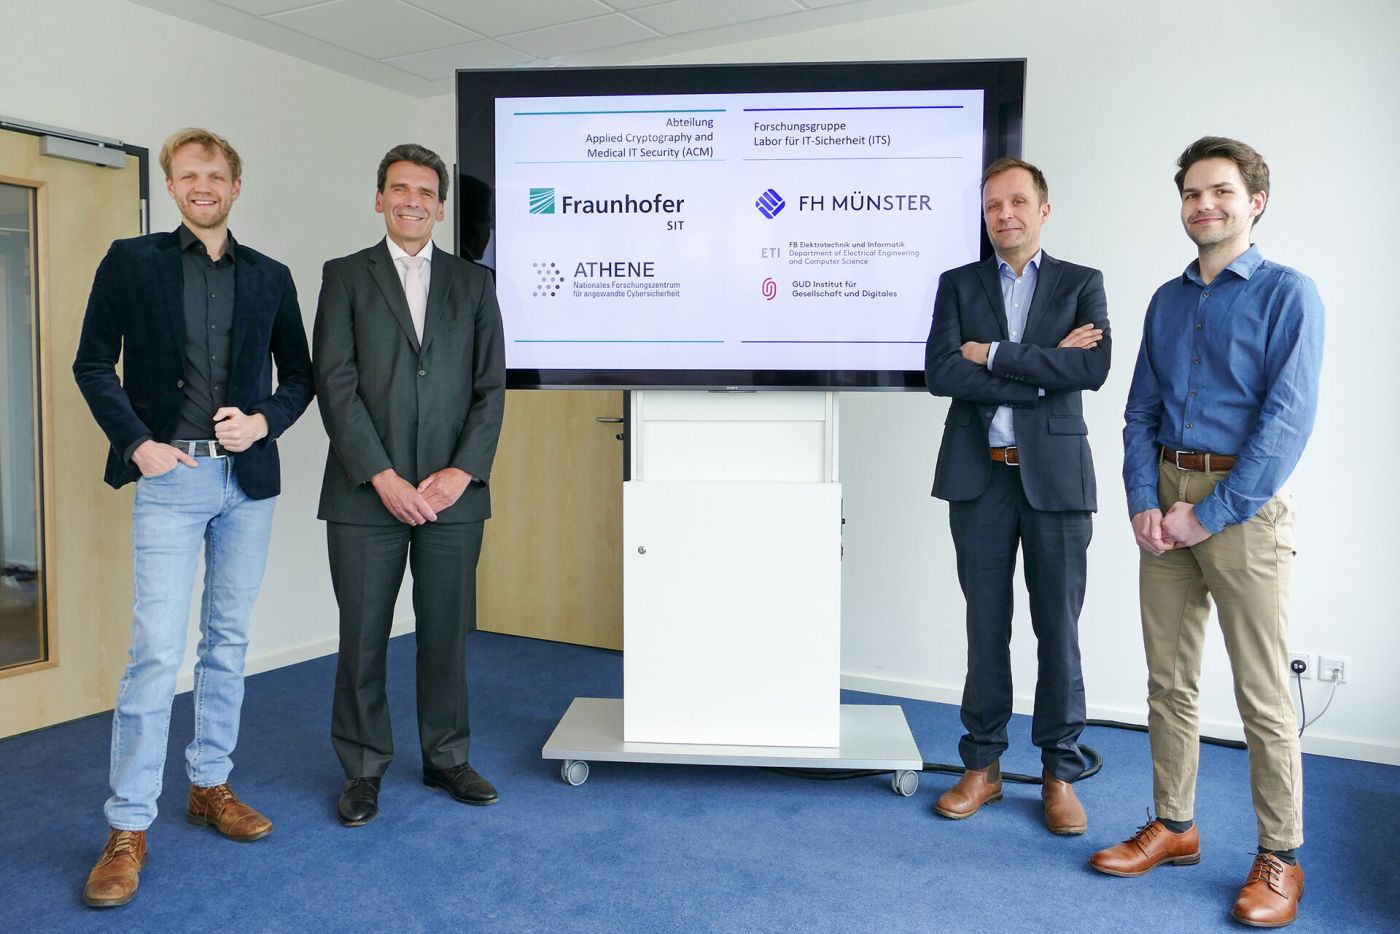 Vier Männer stehen vor einem Bildschirm, der das Logo der FH Münster und eines Fraunhofer-Instituts zeigt. (Foto: FH Münster/Jana Bade)